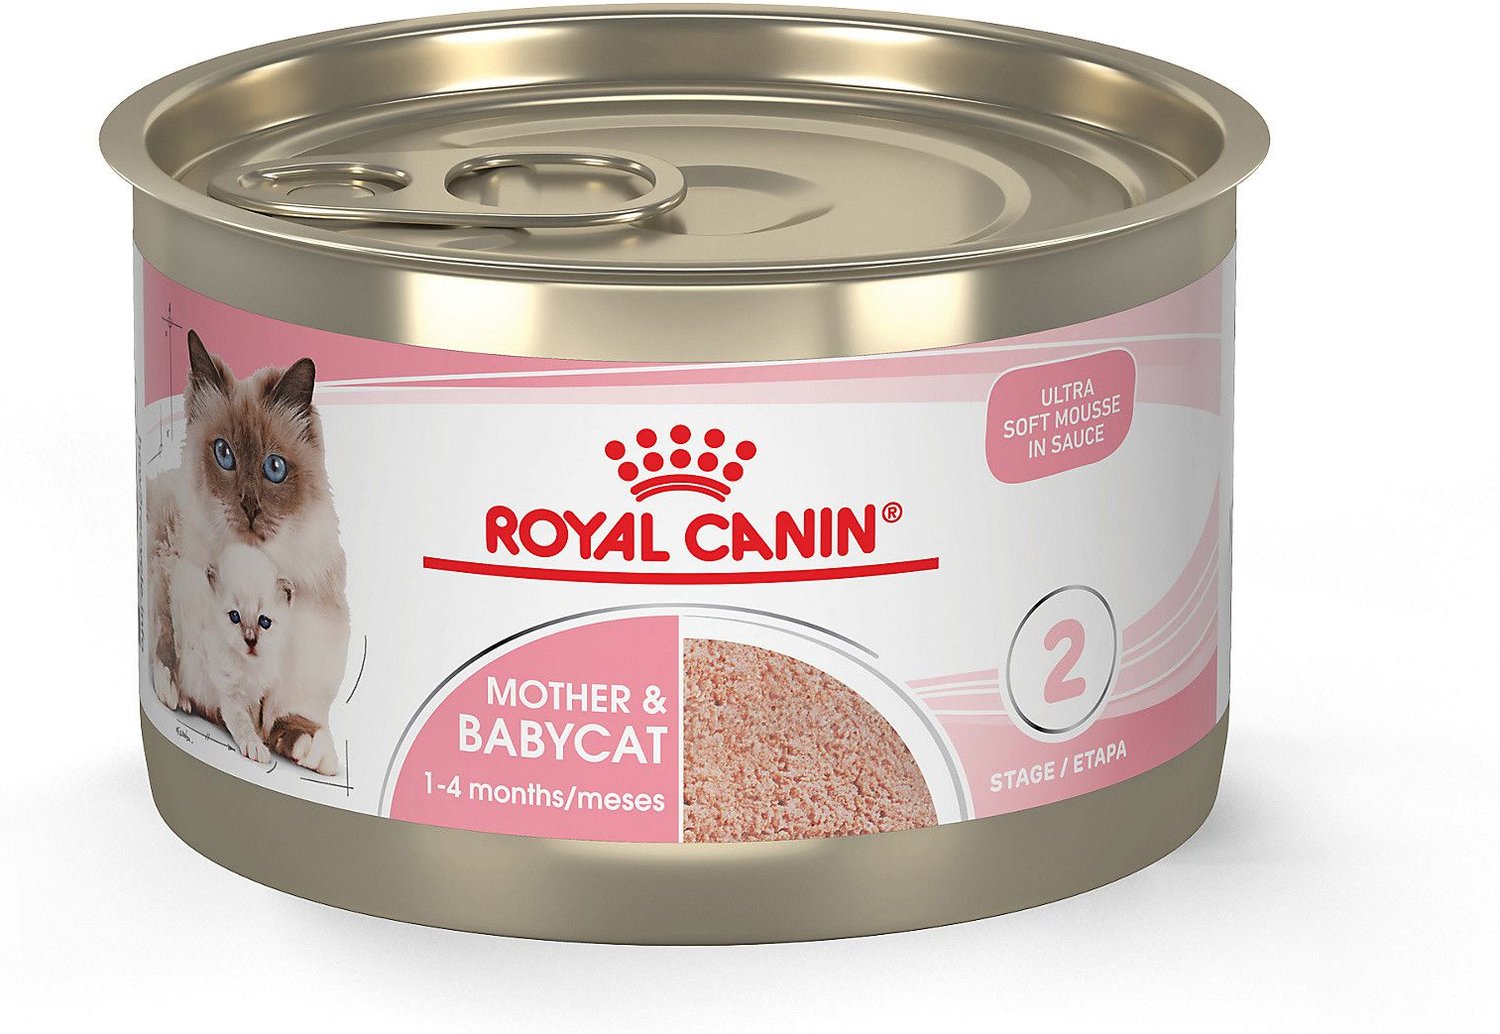 Royal canin best wet foods for kittens 